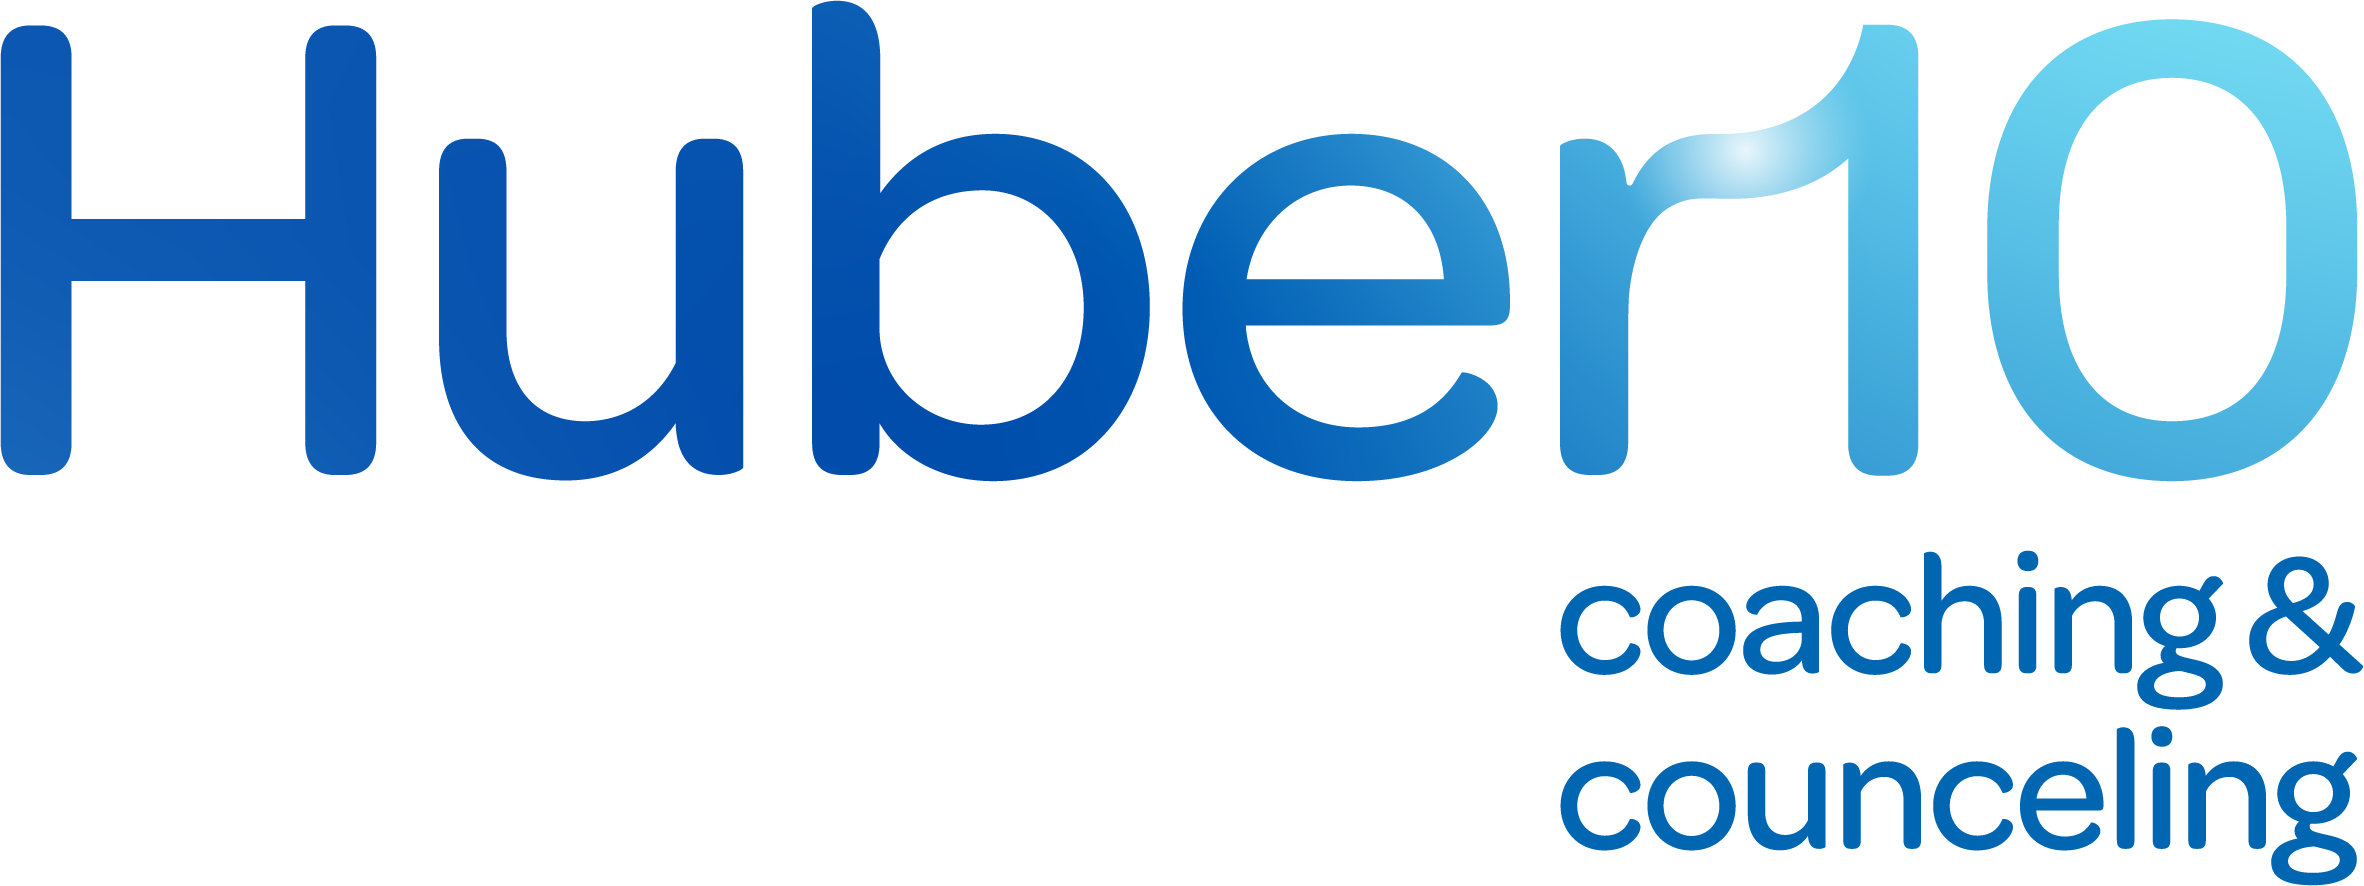 Huber10 logo RGB